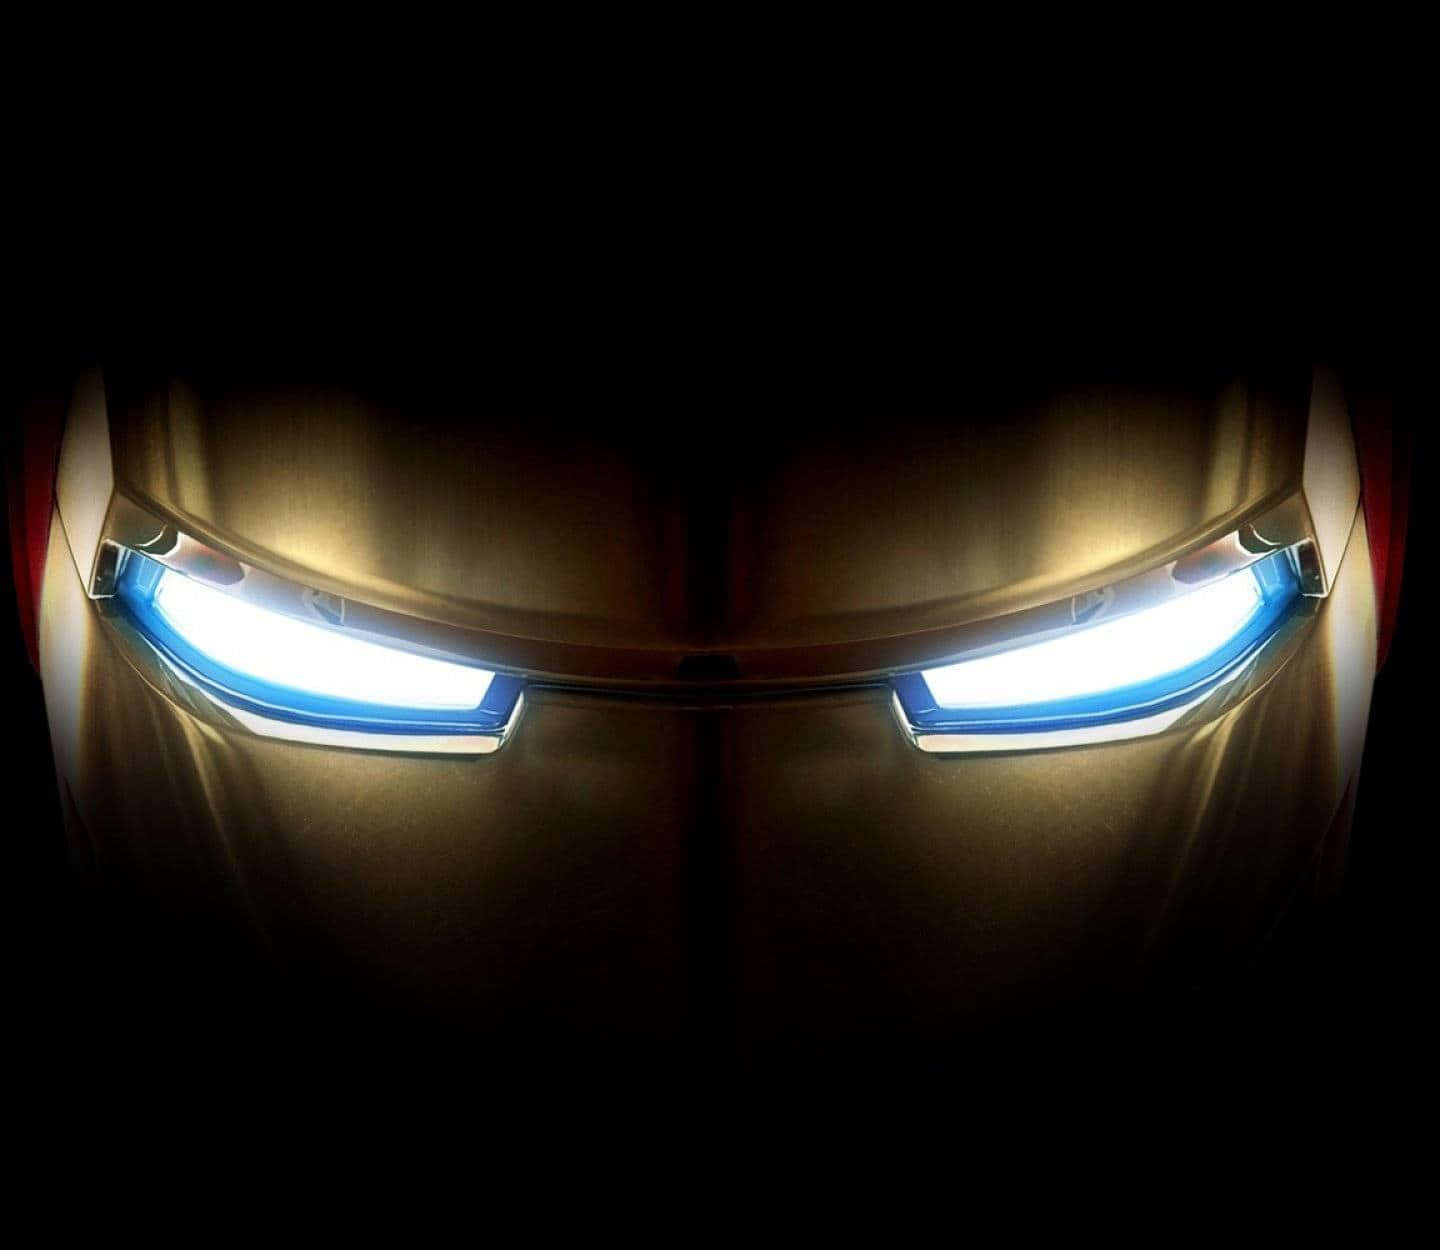 Iron Man Helmet Glowing Eyes